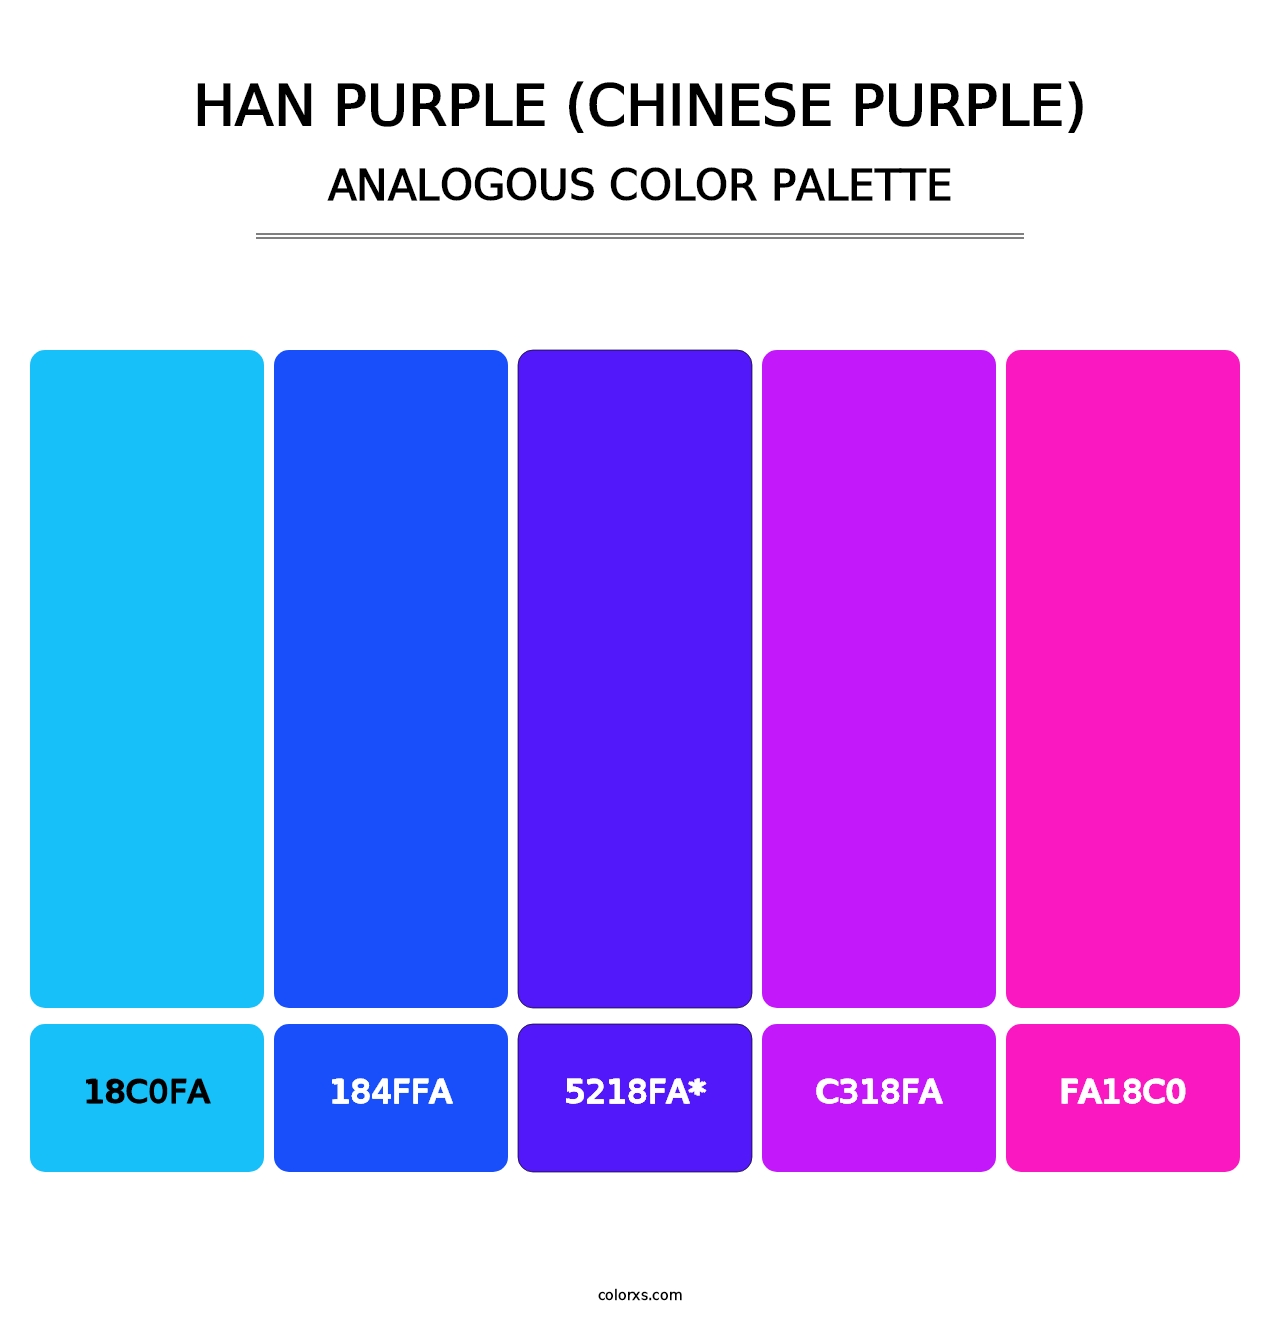 Han Purple (Chinese Purple) - Analogous Color Palette